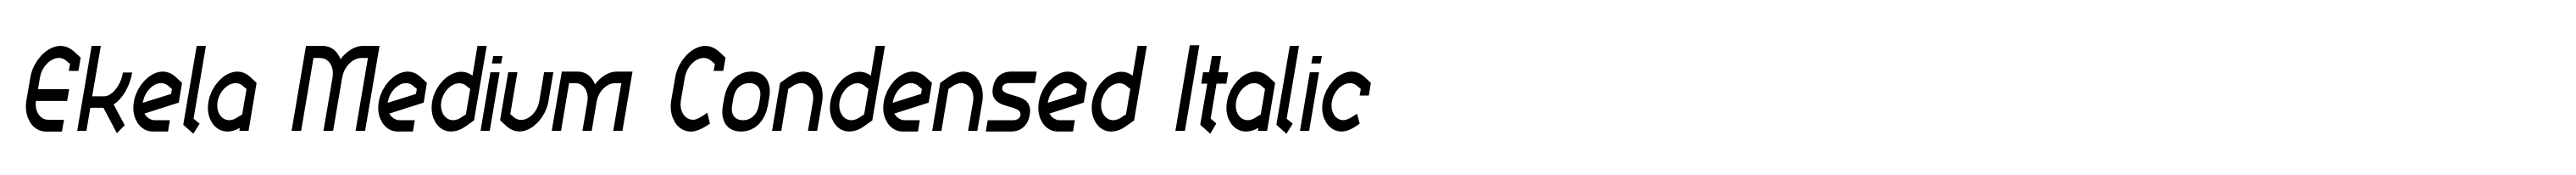 Ekela Medium Condensed Italic